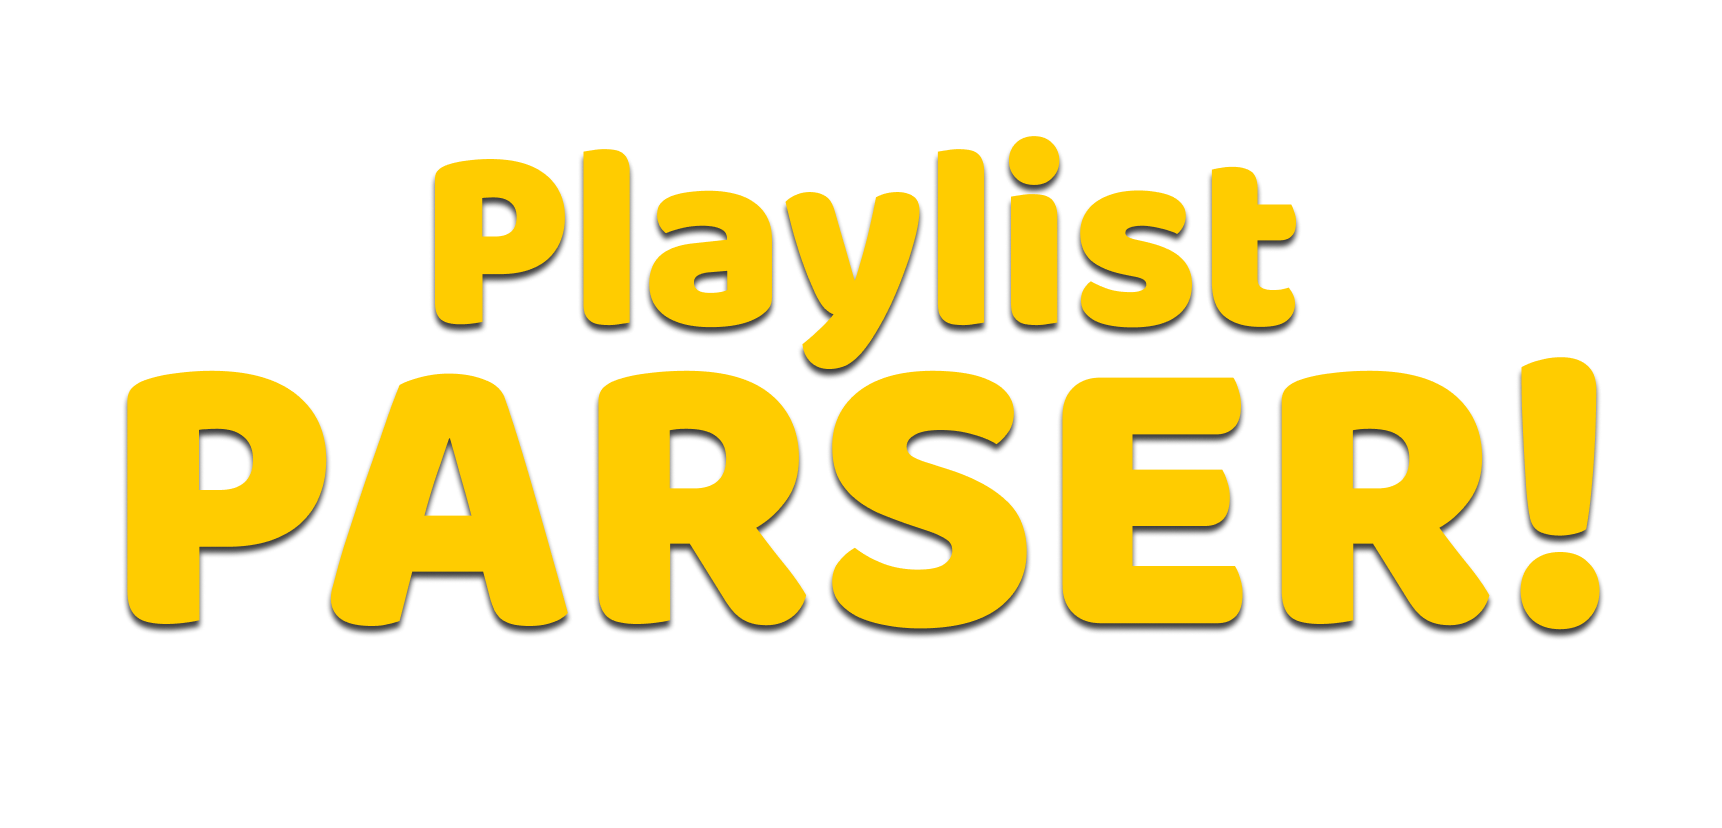 Playlist Parser logo